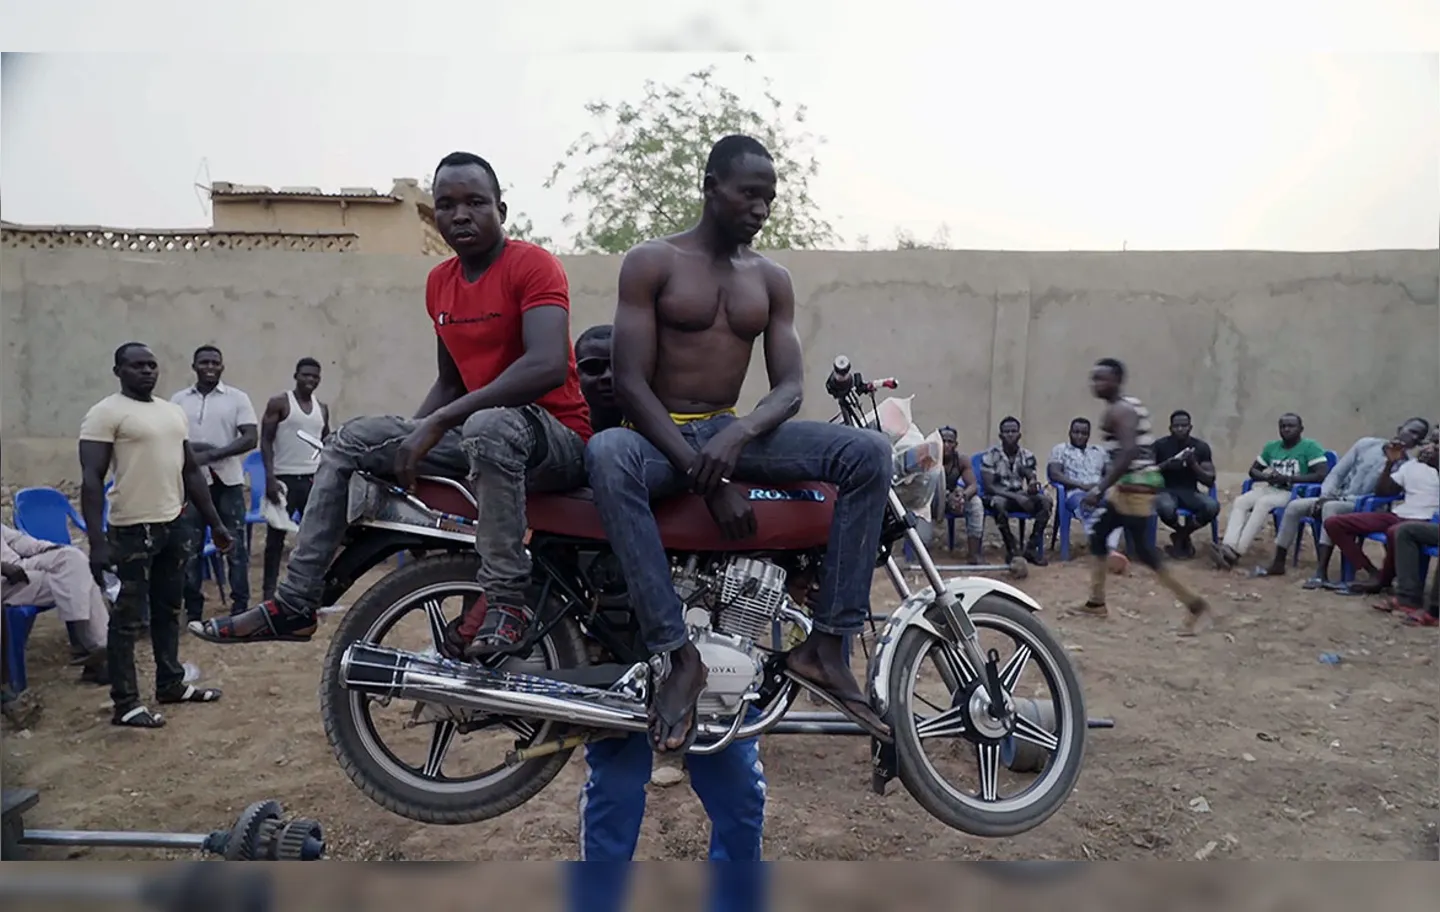 Zinder: jovens contra a cultura da violência em uma cidade do Níger | Fotos: Divulgação